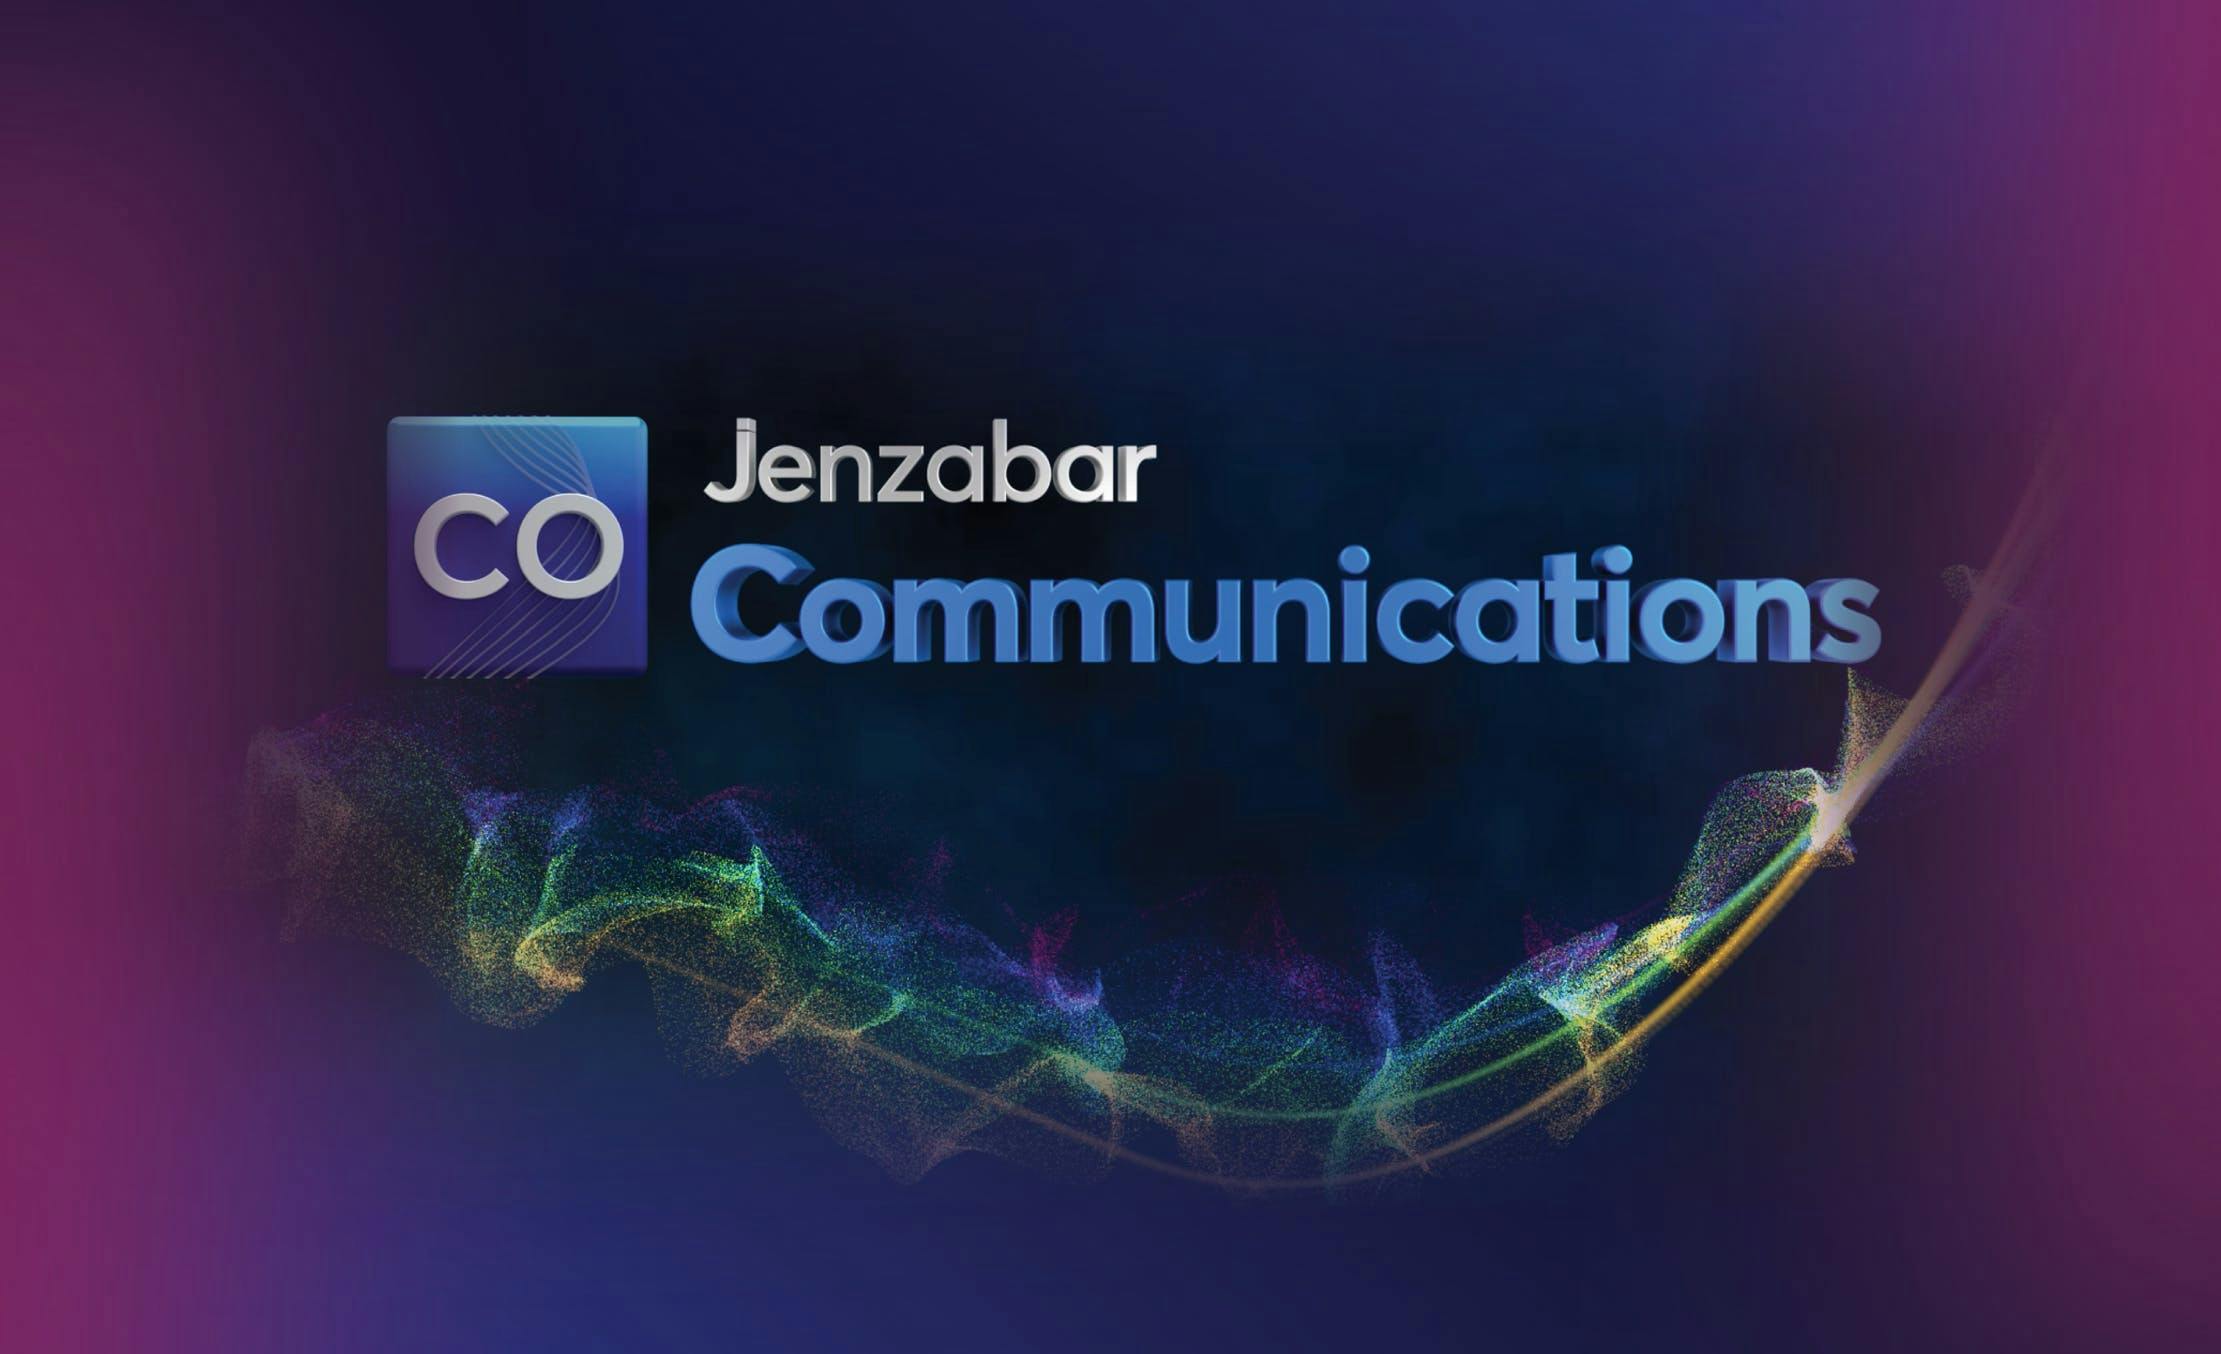 Jenzabar Communications